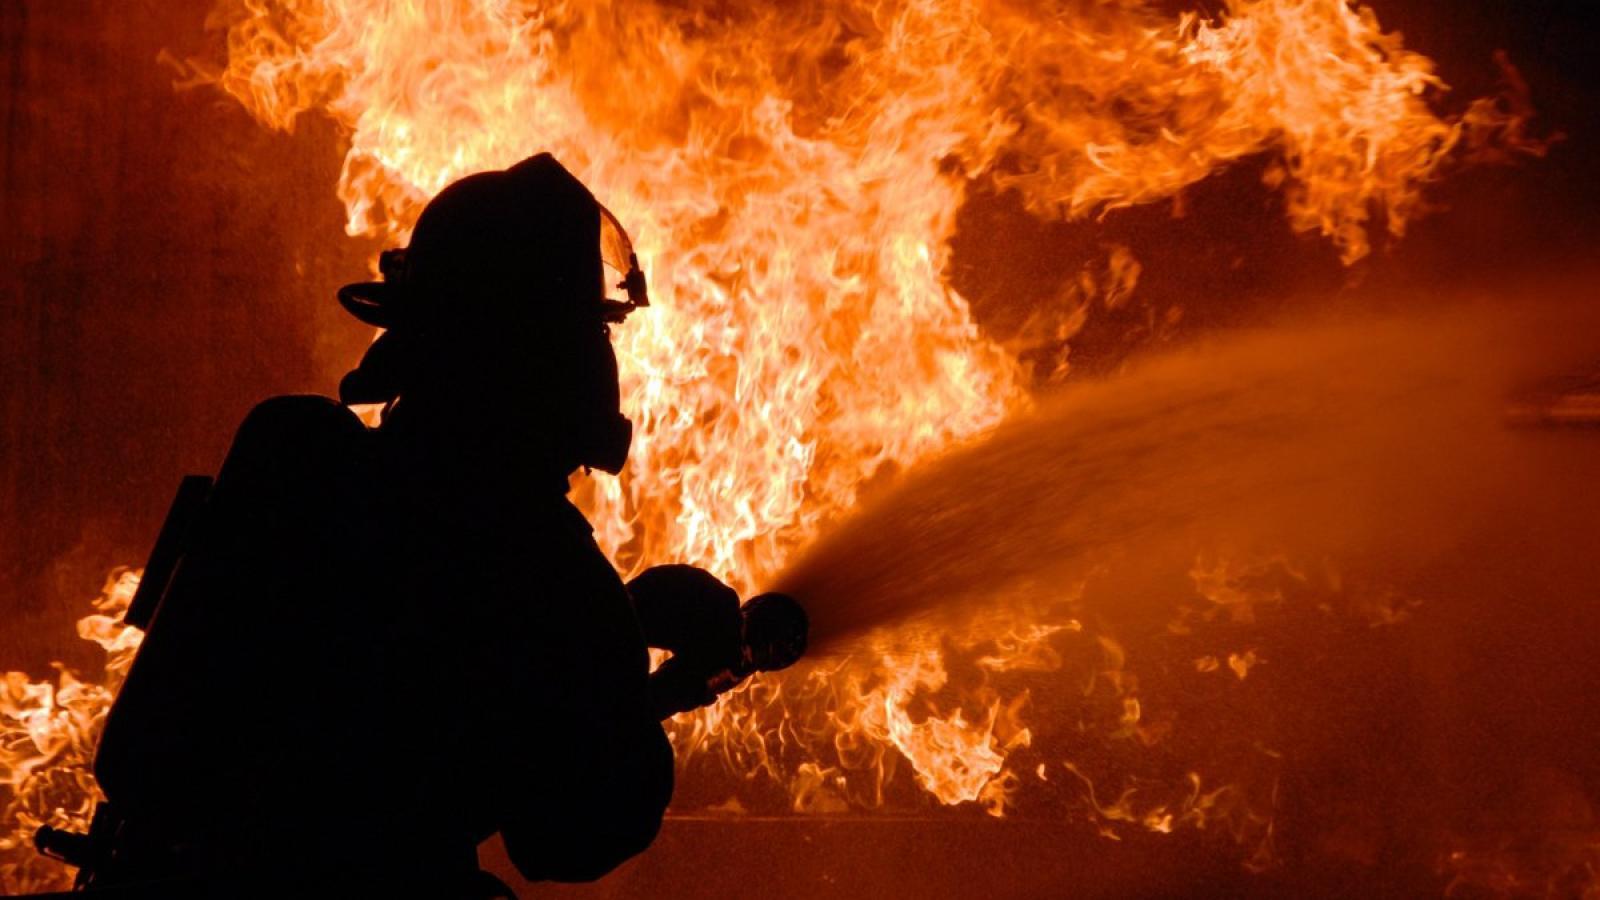 Пожар в многоэтажном доме: женщина пострадала